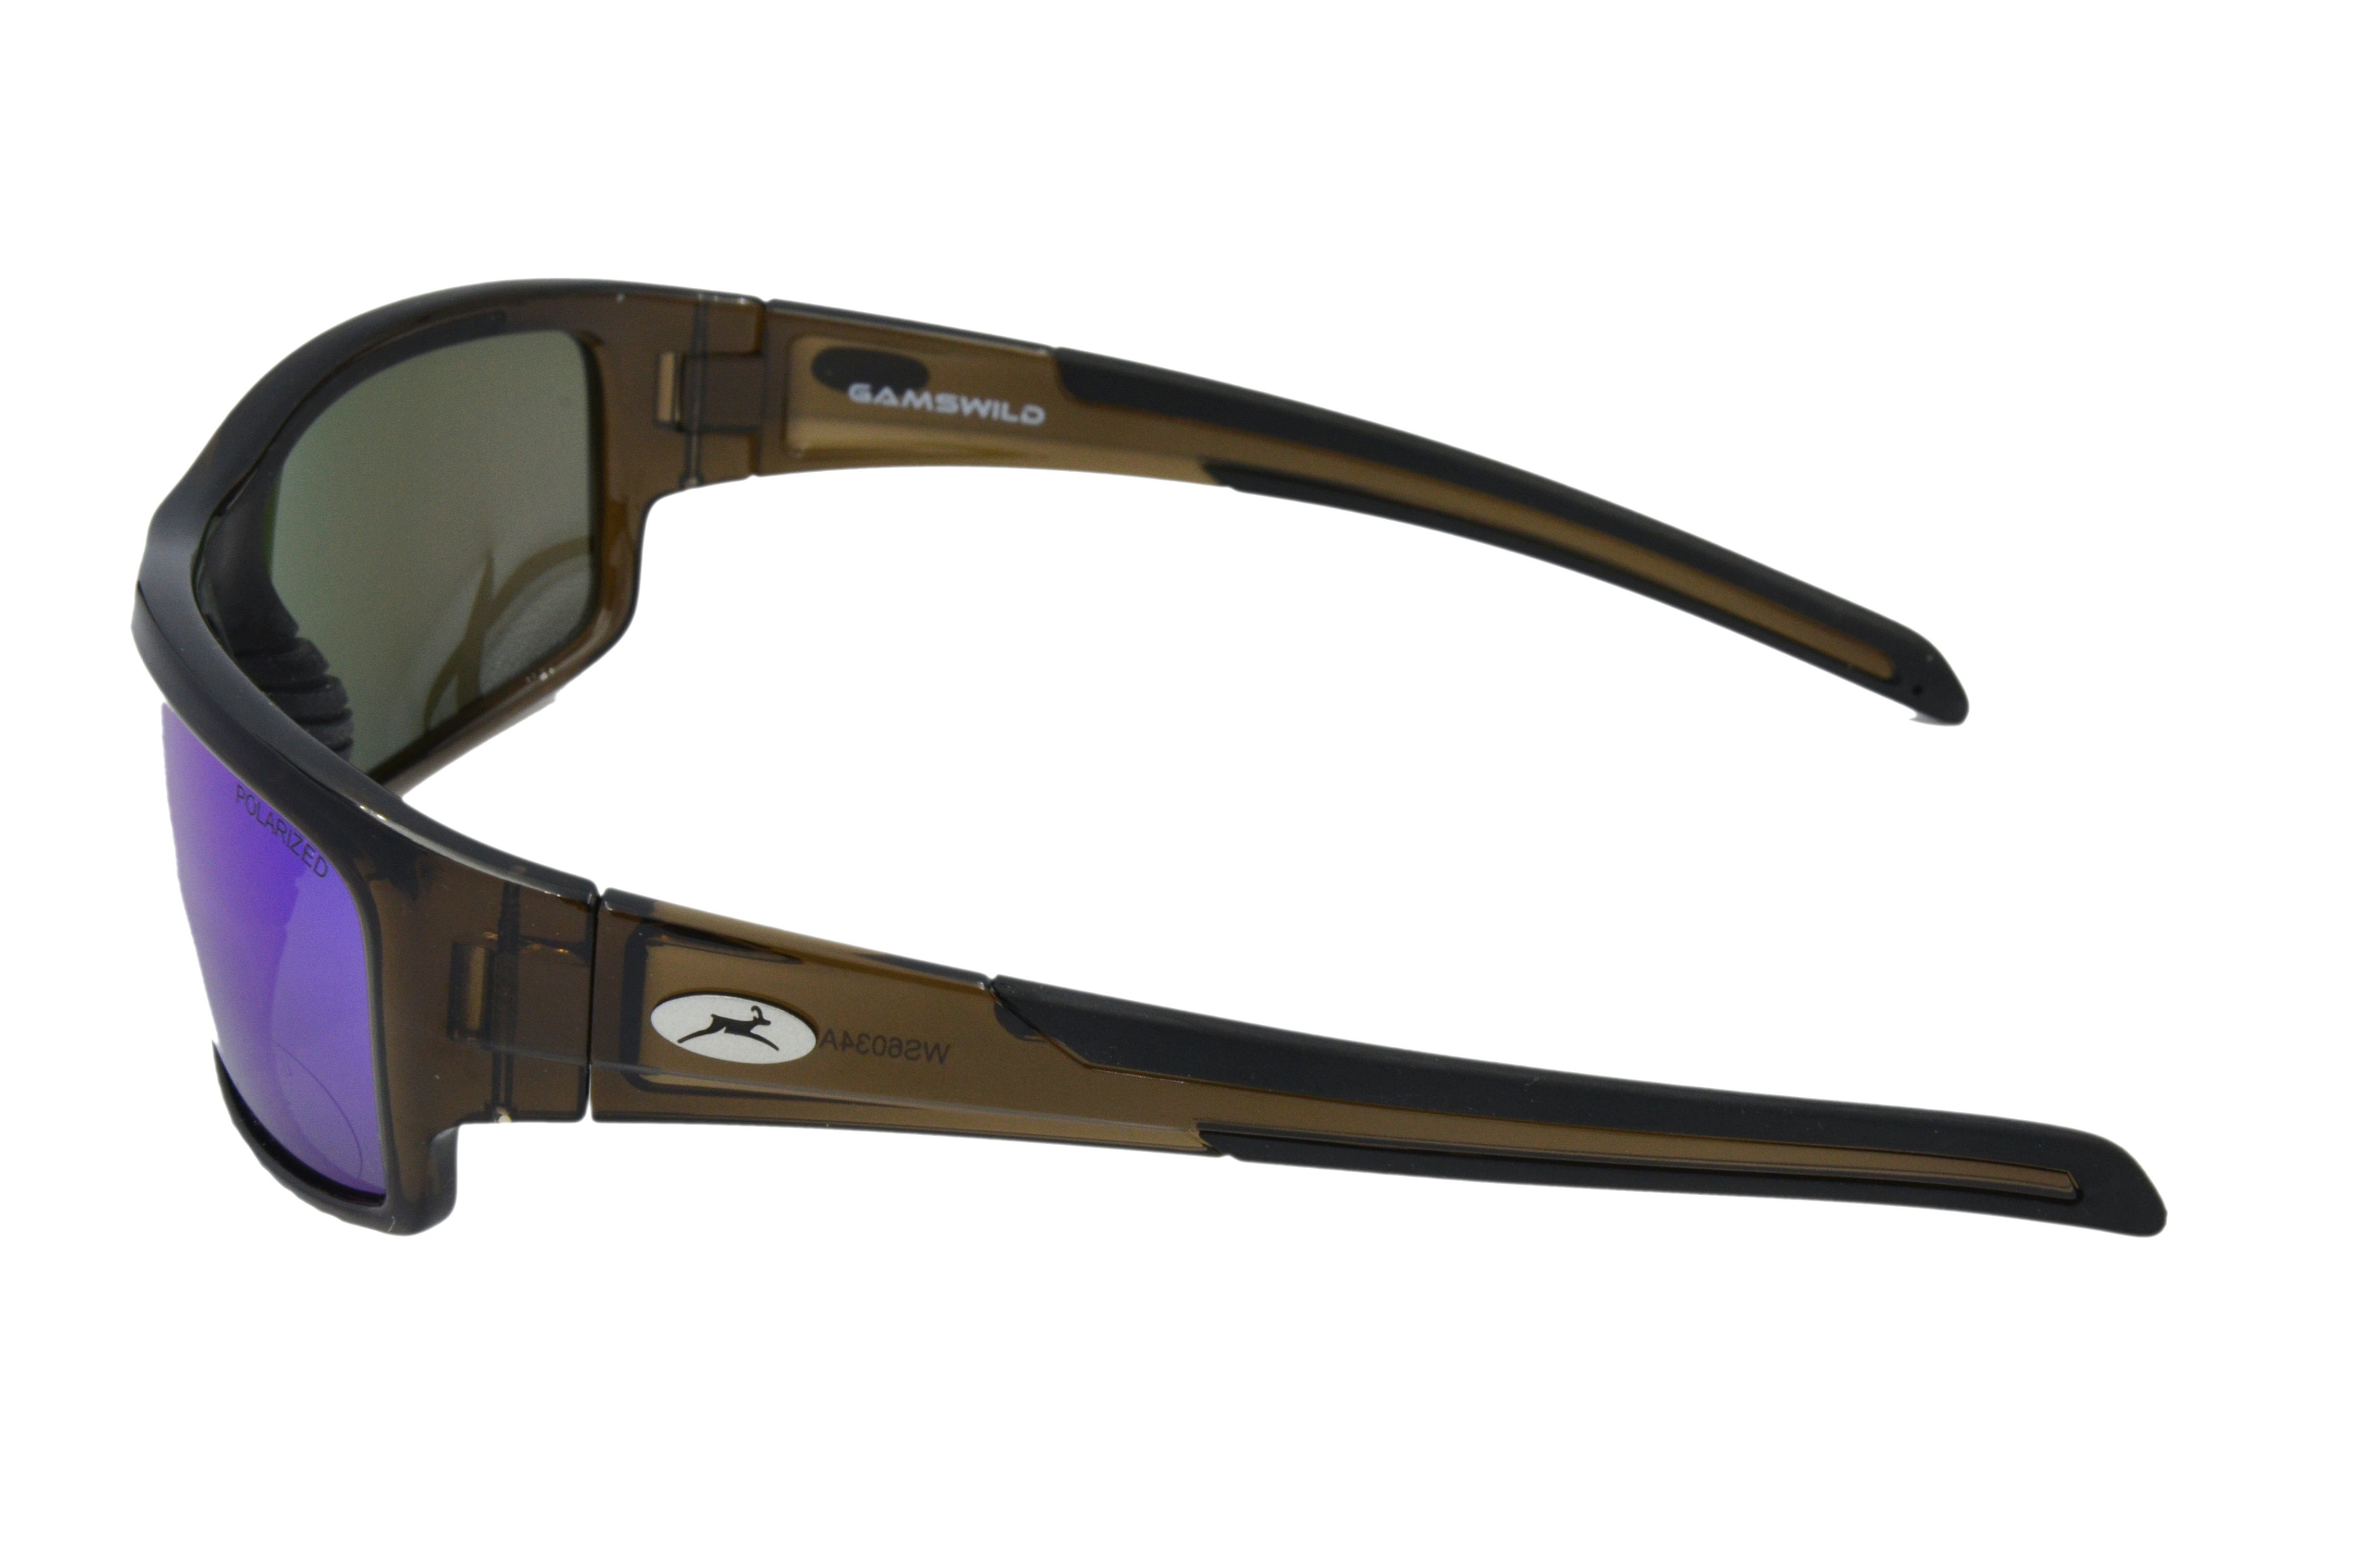 Gamswild Sportbrille WS6034 Sportbrille Sonnenbrille Gläser, grau, schwarz, Fahrradbrille braun Herren, grün-türkis, Damen blau, polarisierte Skibrille